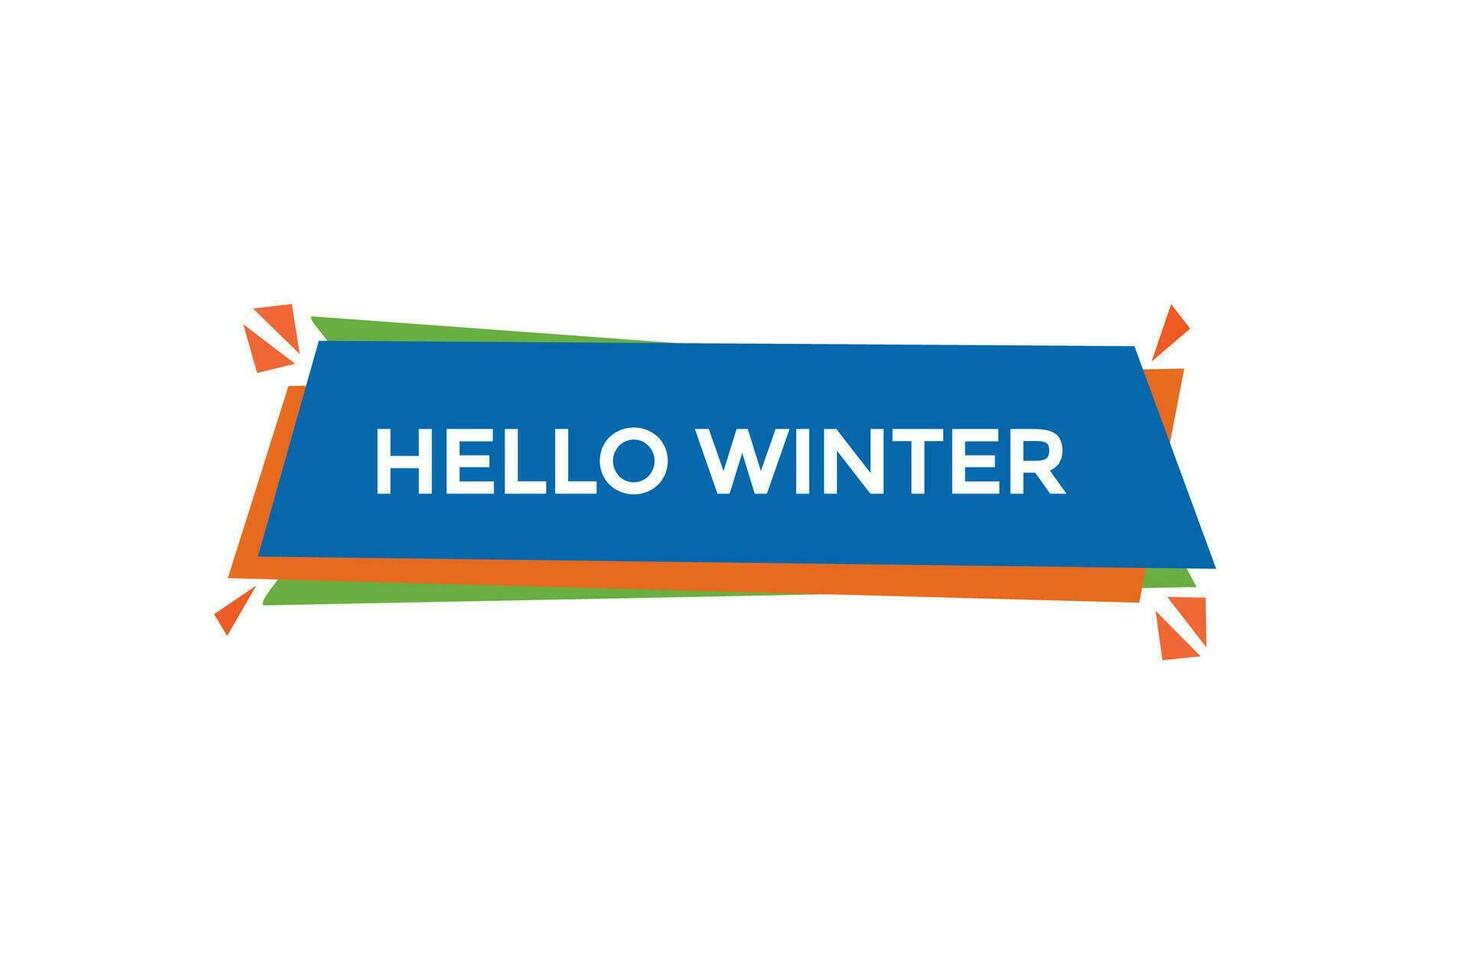 nuevo Hola invierno moderno, sitio web, hacer clic botón, nivel, firmar, discurso, burbuja bandera, vector